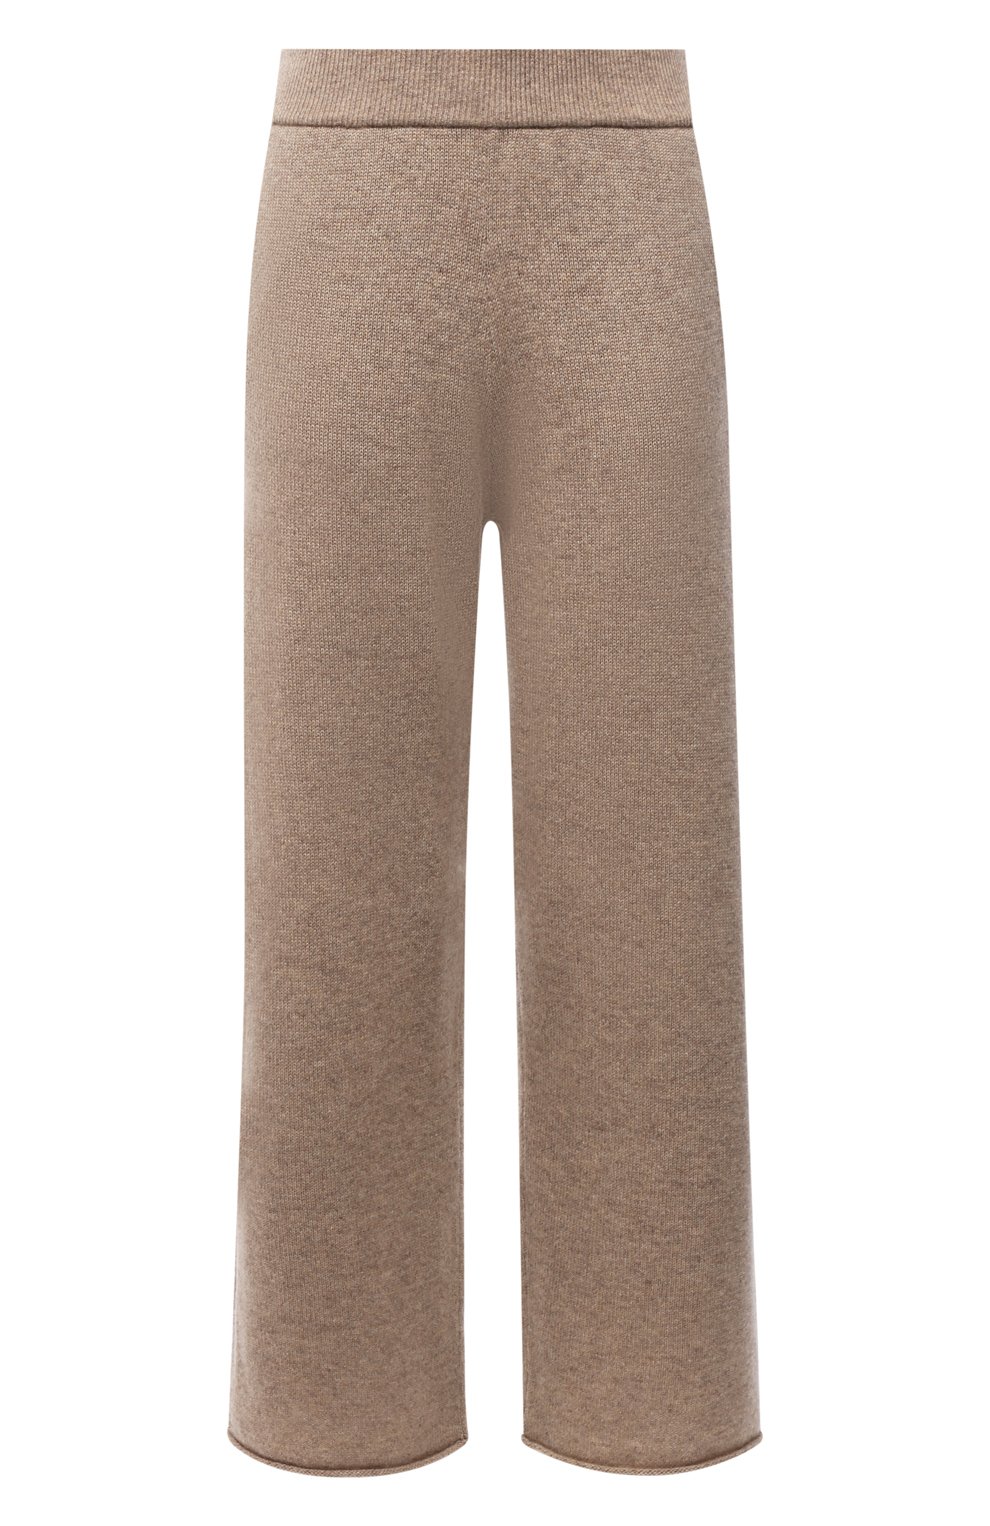 Кашемировые брюки Polo Ralph Lauren